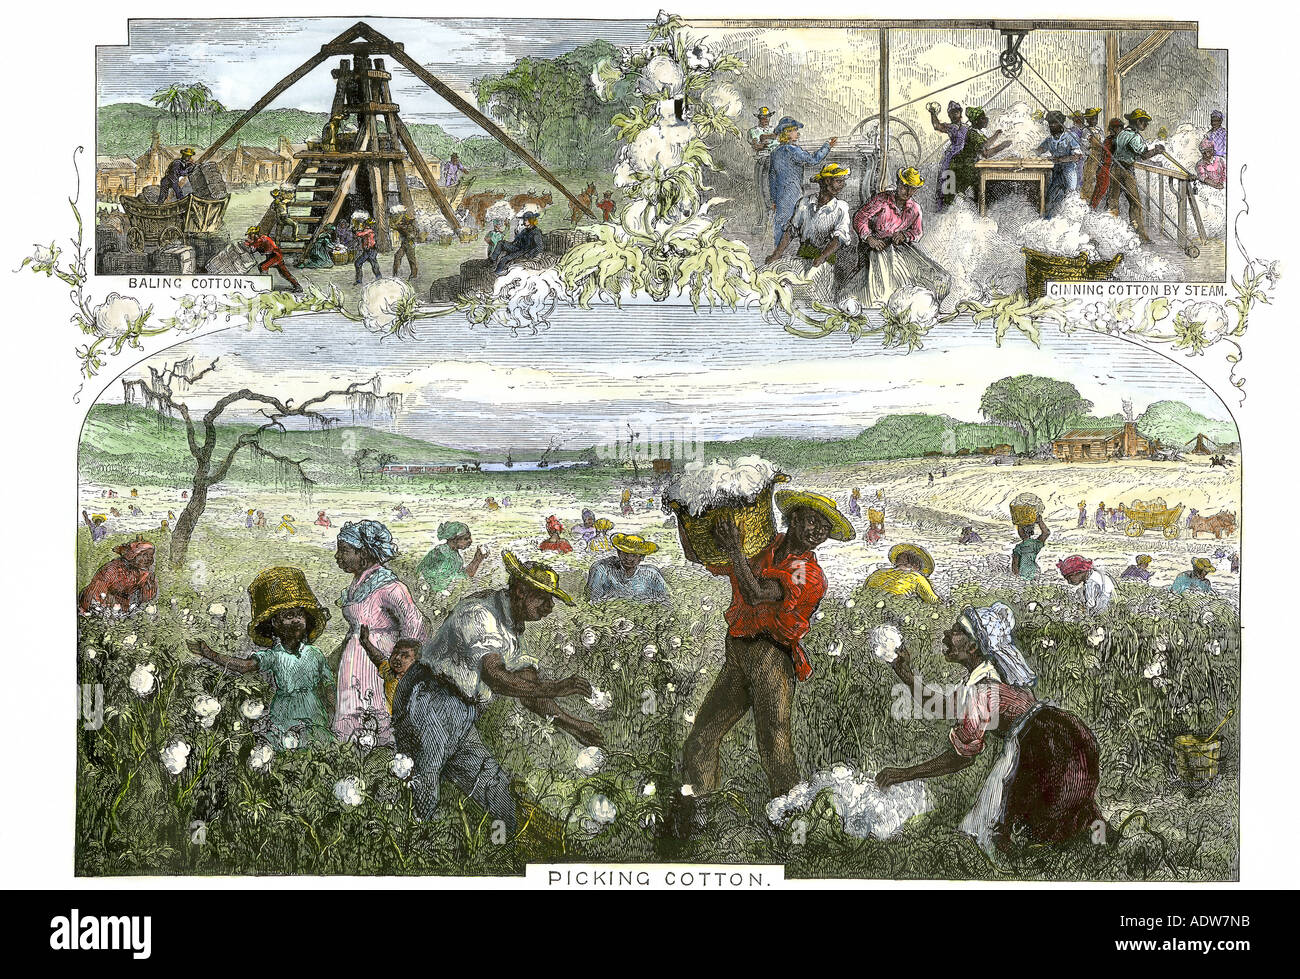 African American slaves Kommissionierung pressen und Entkörnung Baumwolle durch Dampf auf einer Plantage im Süden, 1800. Hand - farbige Holzschnitt Stockfoto